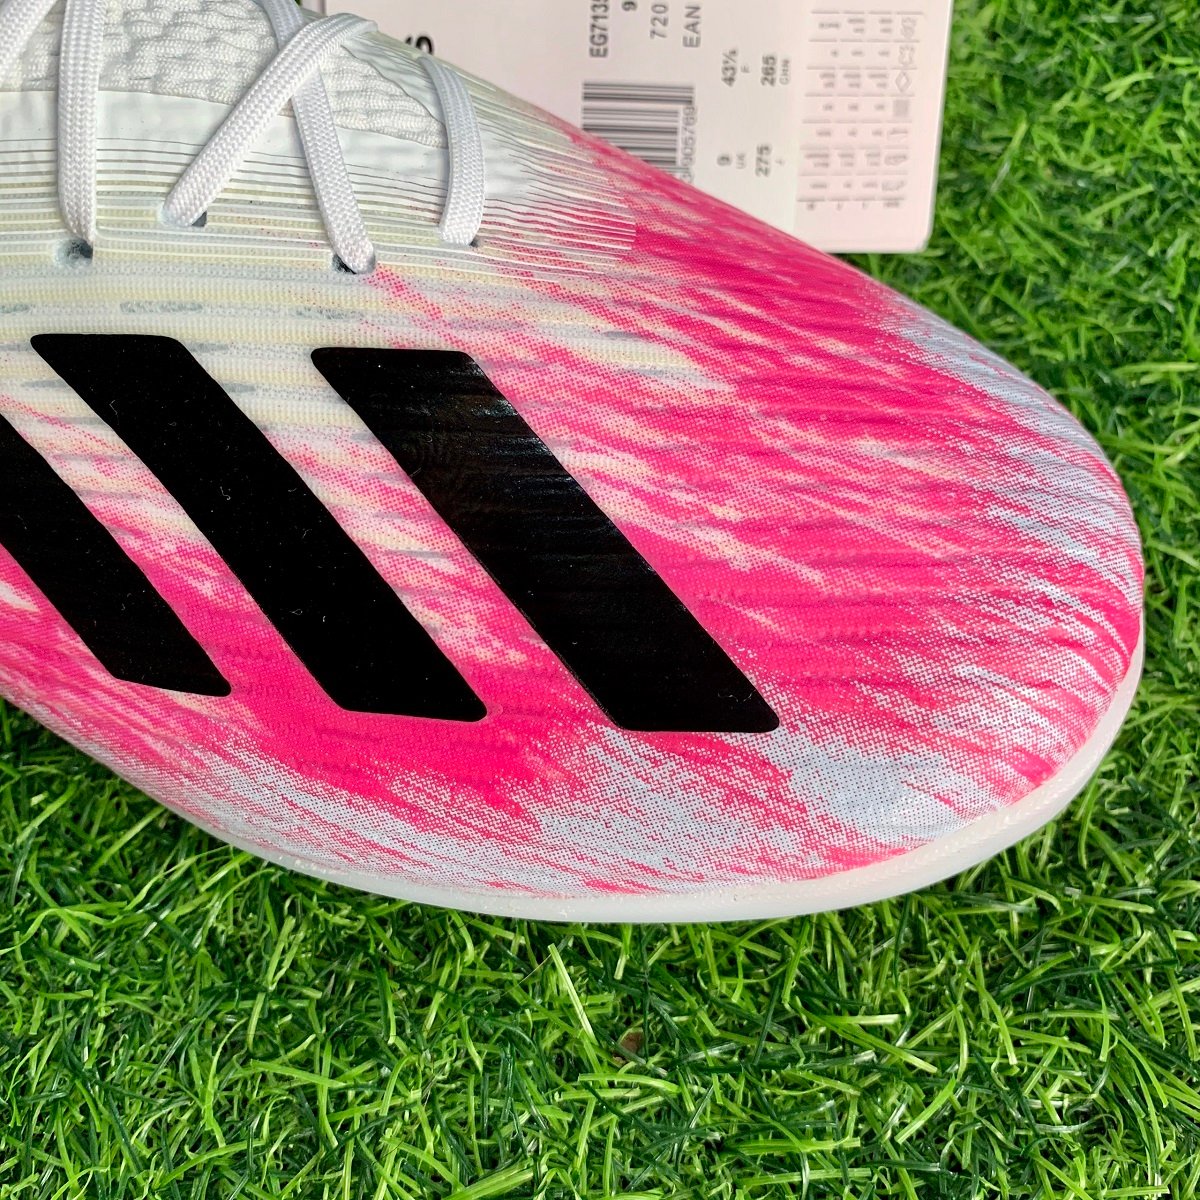 Giày đá bóng adidas X 19.1 TF EG7135 - Cloud White / Core Black / Shock Pink